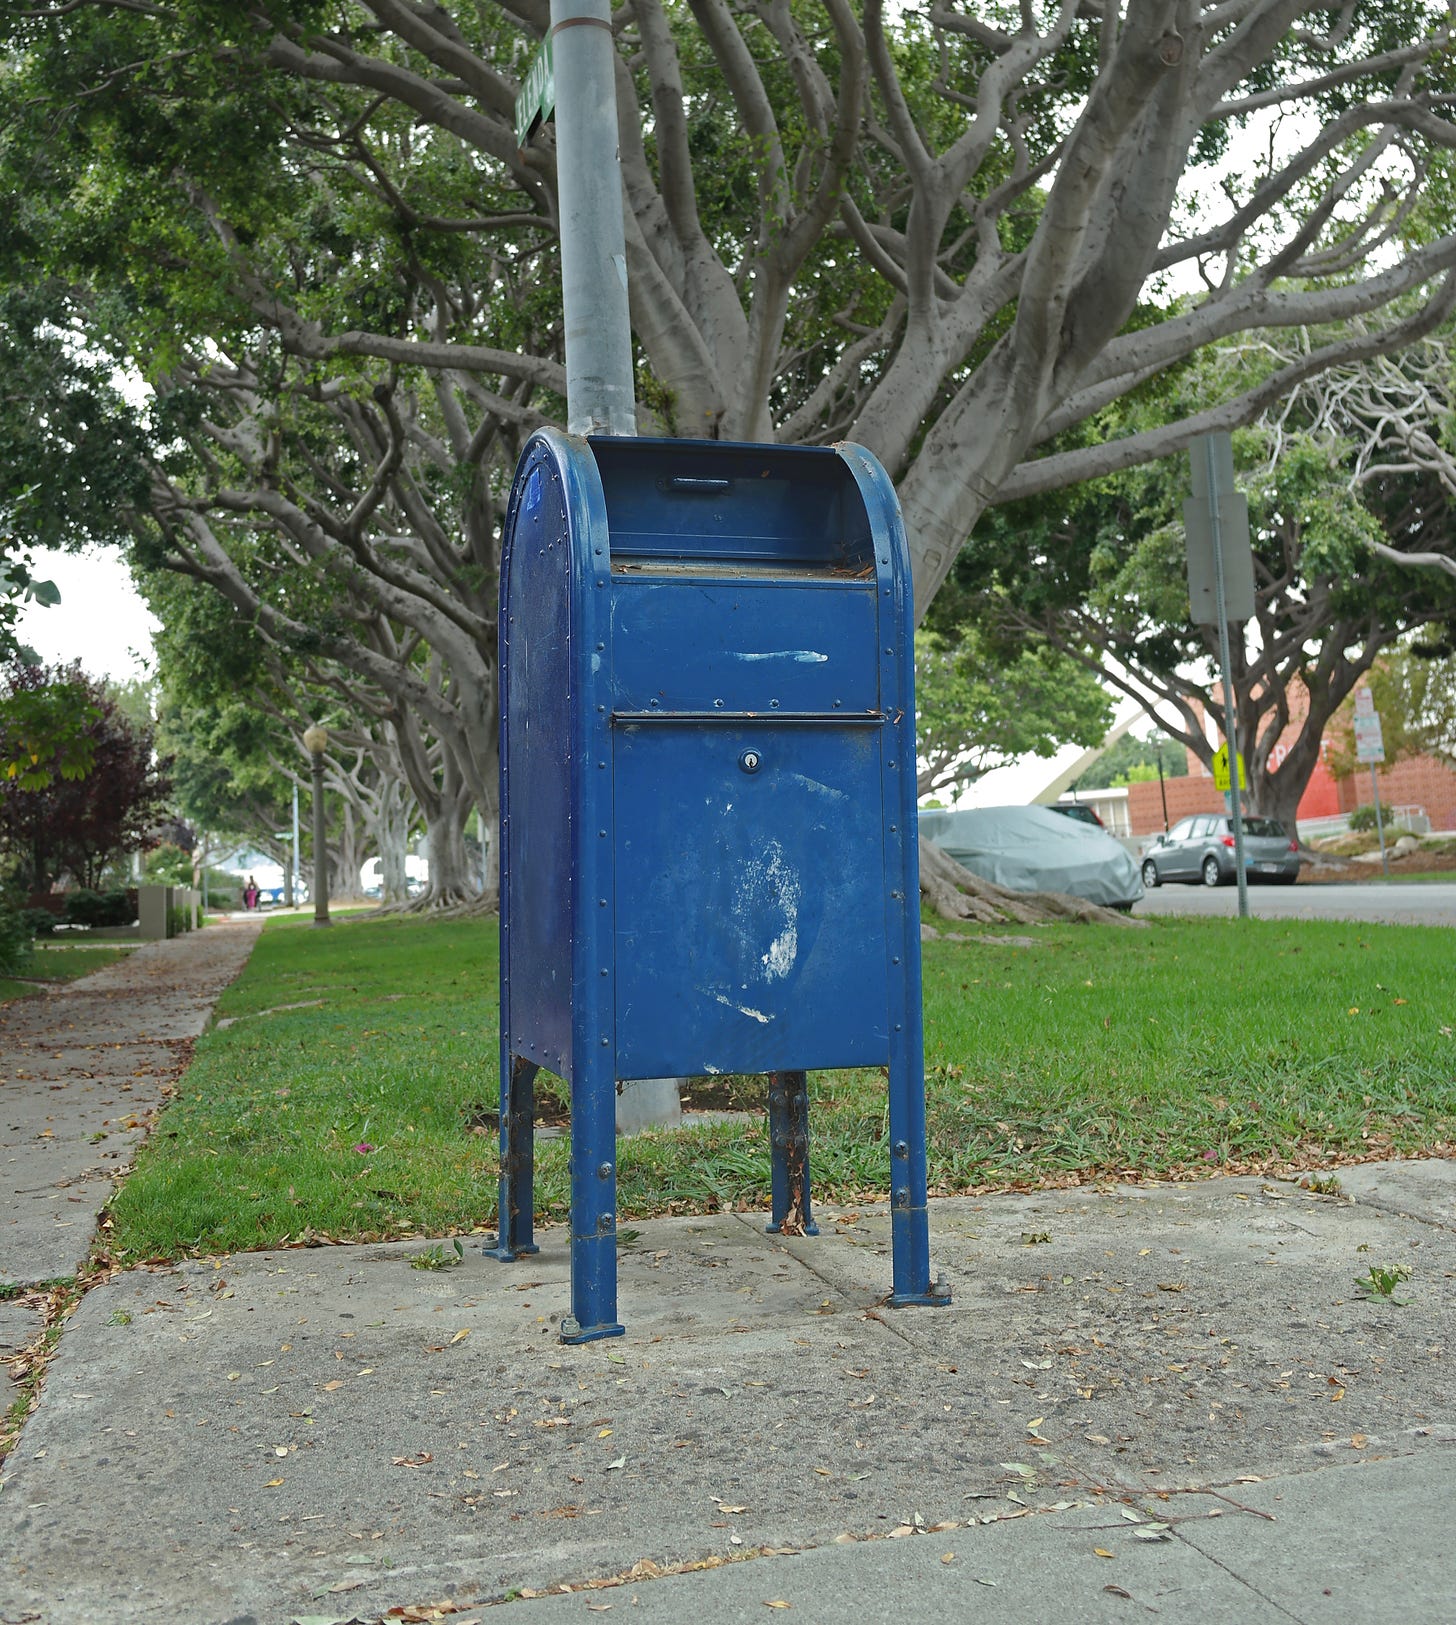 US Postal Service box on treelined street